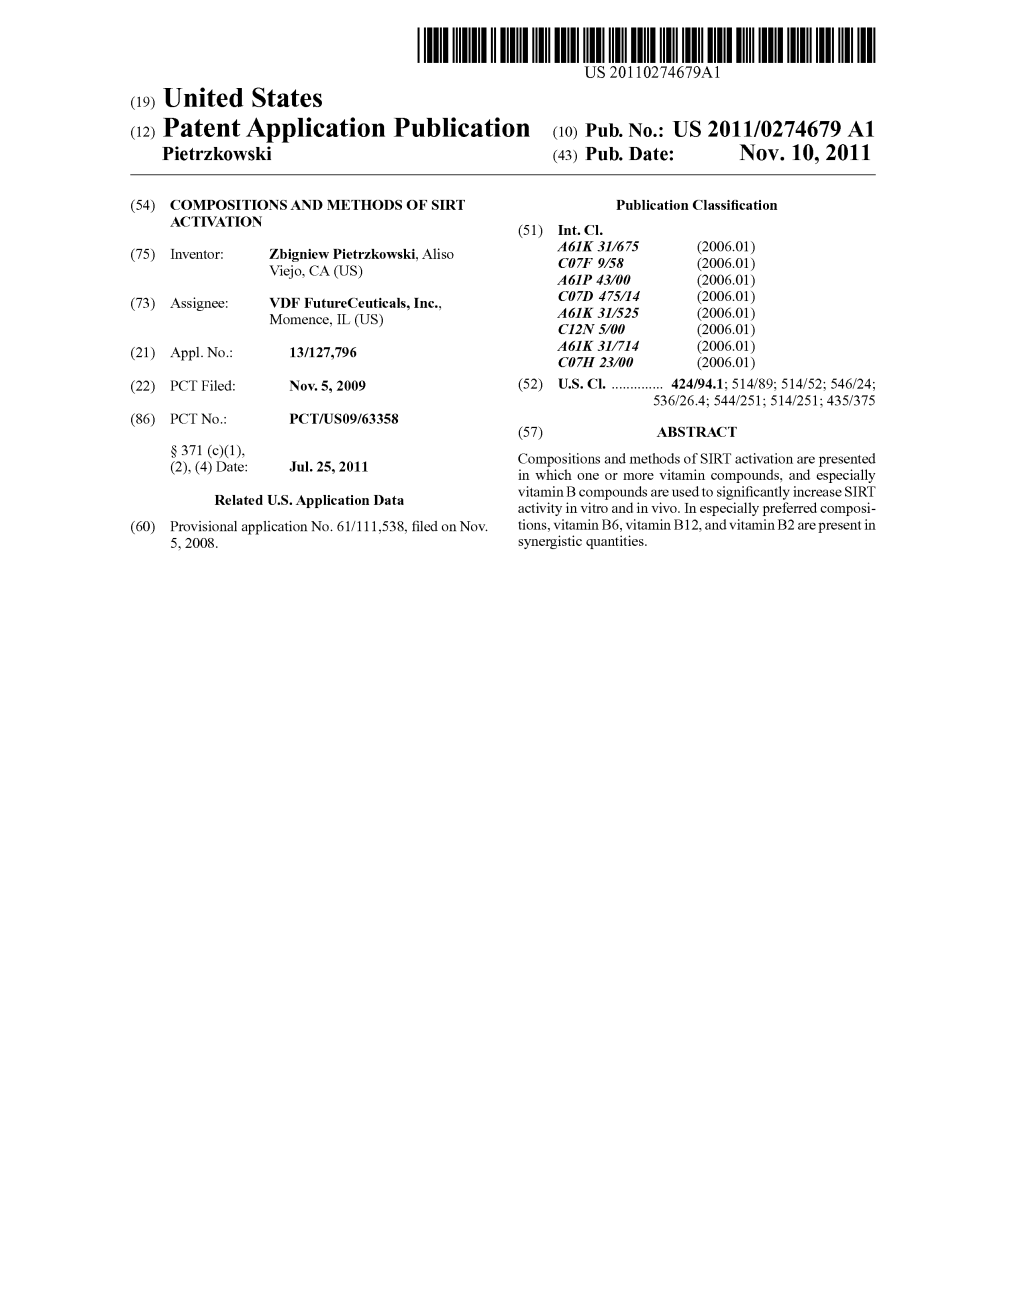 (12) Patent Application Publication (10) Pub. No.: US 2011/0274.679 A1 Pietrzkowski (43) Pub